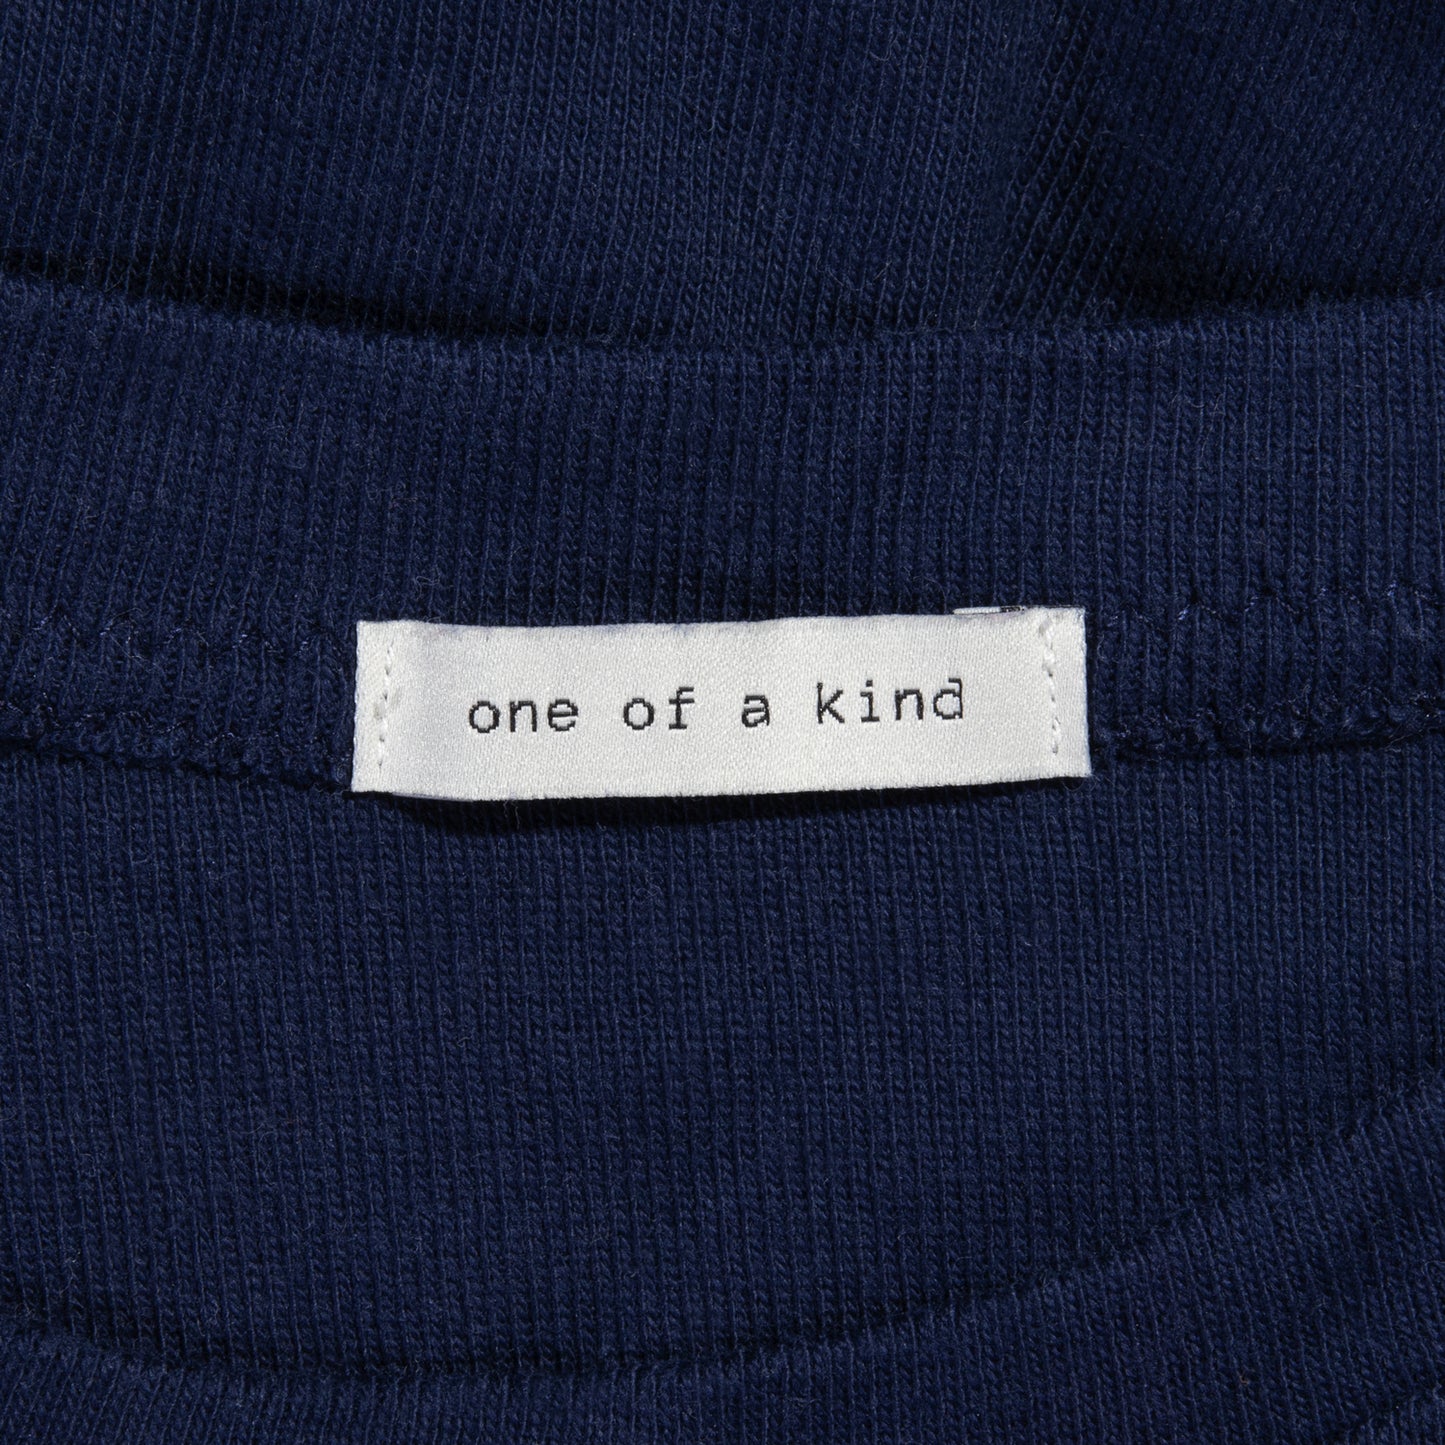 Étiquettes "One of a Kind" - KATM